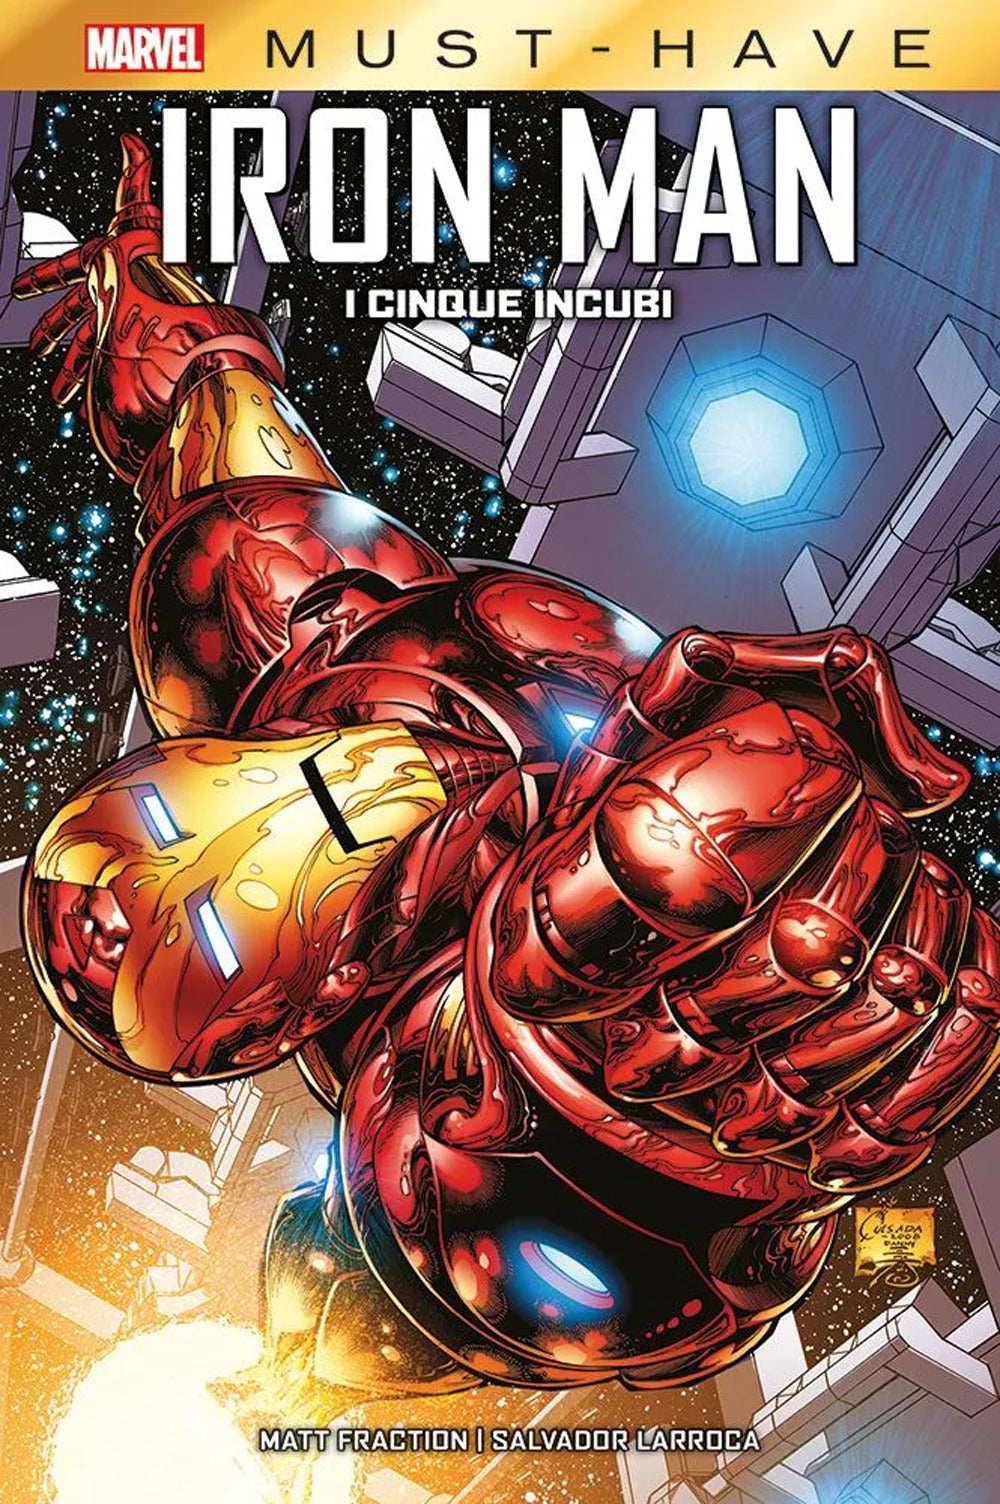 I cinque incubi. Iron Man.